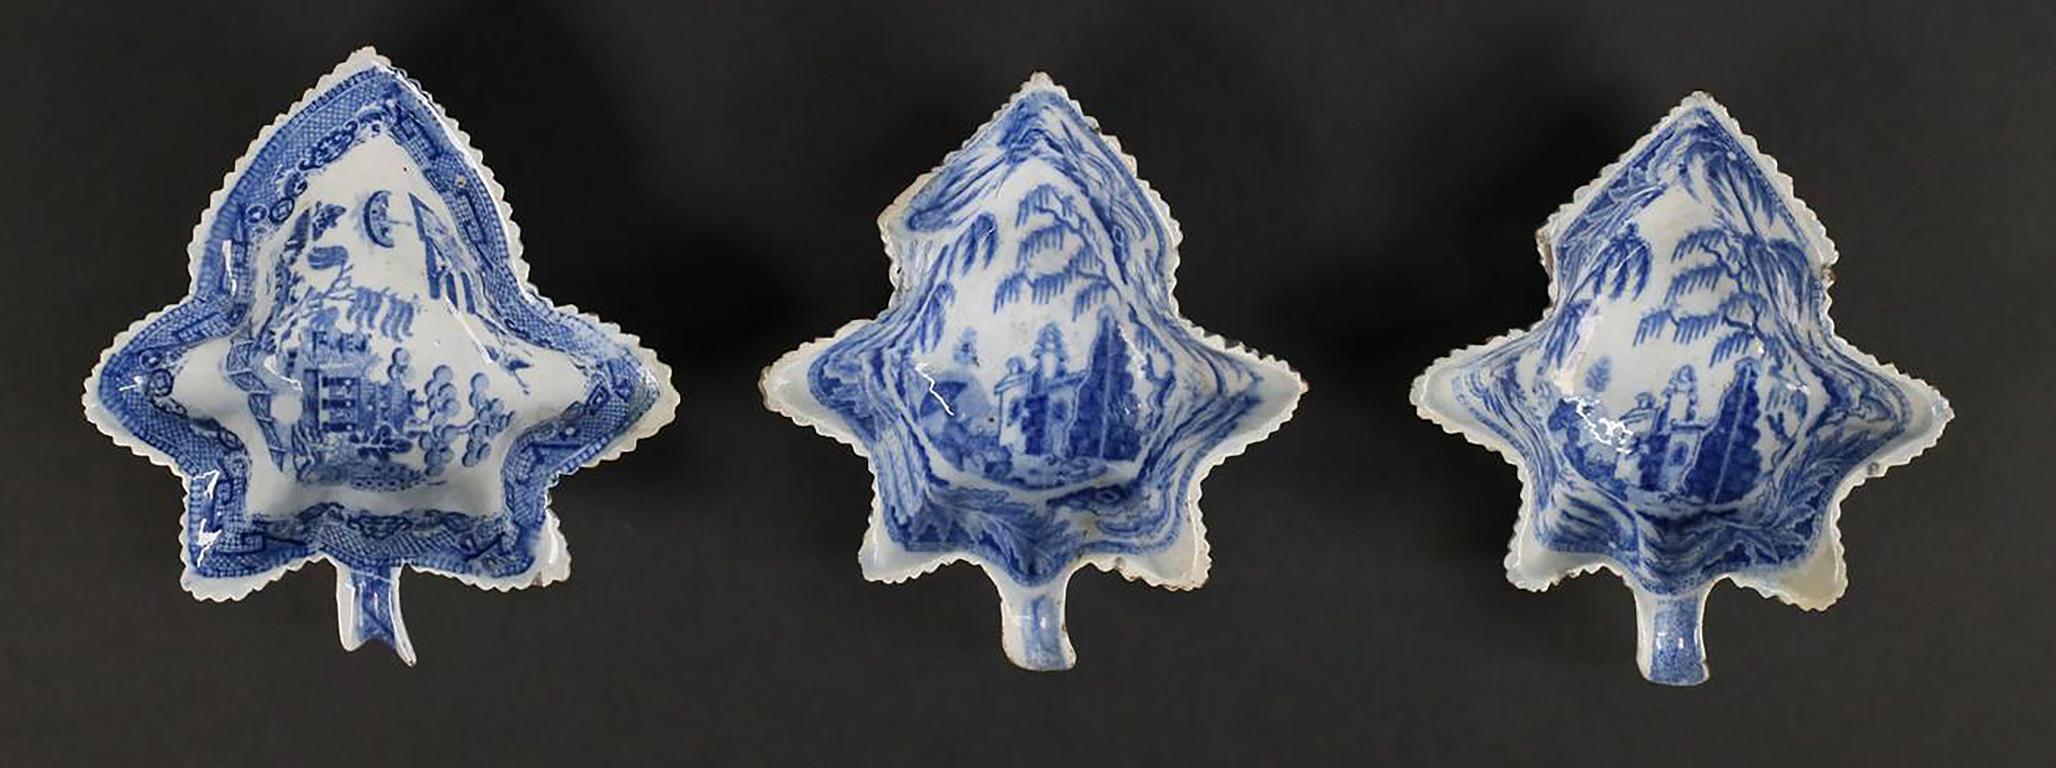 Drei blaue und weiße Staffordshire-Porzellanteller in Blattform mit Chinoiserie-Szenen im Kantonsstil

Anonym
Staffordshire, England; Erste Hälfte des 19. Jahrhunderts
Porzellan blau Transferware

Ungefähre Größe: 5,25 (L) x 5 (B) x 1,5 (H) pro